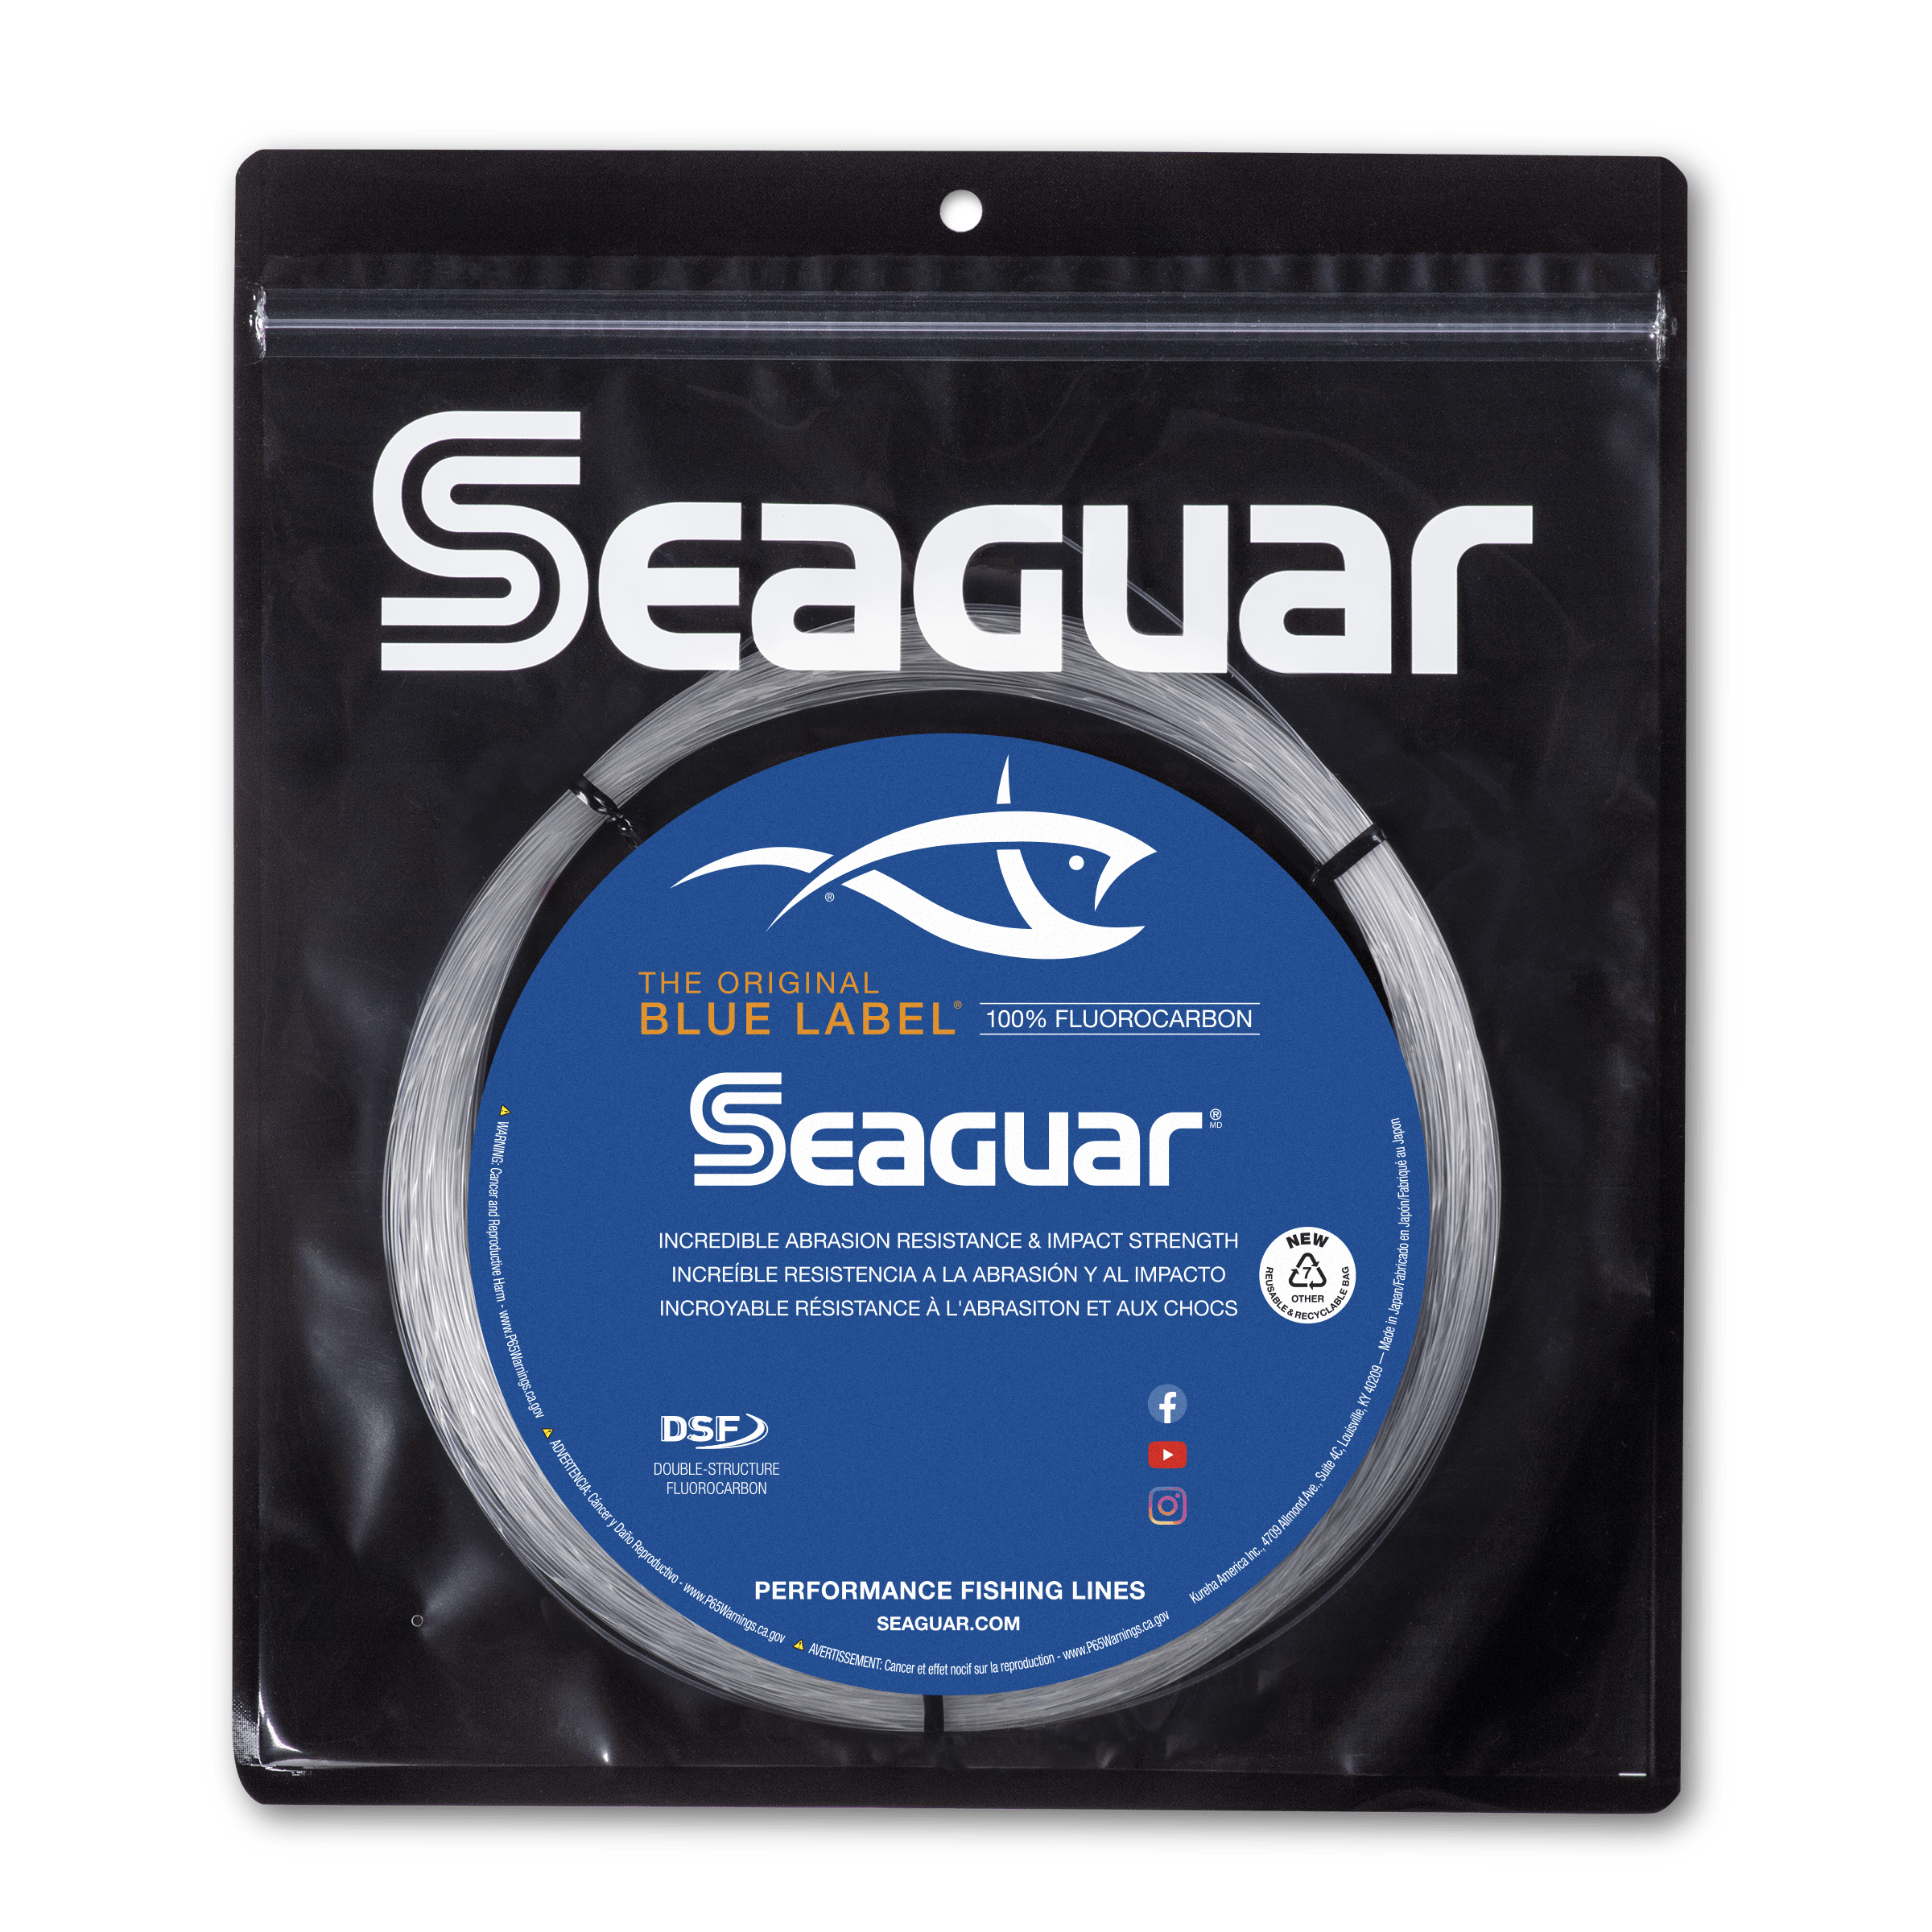 Seaguar Premium Manyu Fluorocarbon 30m/25m Big Game Fishing